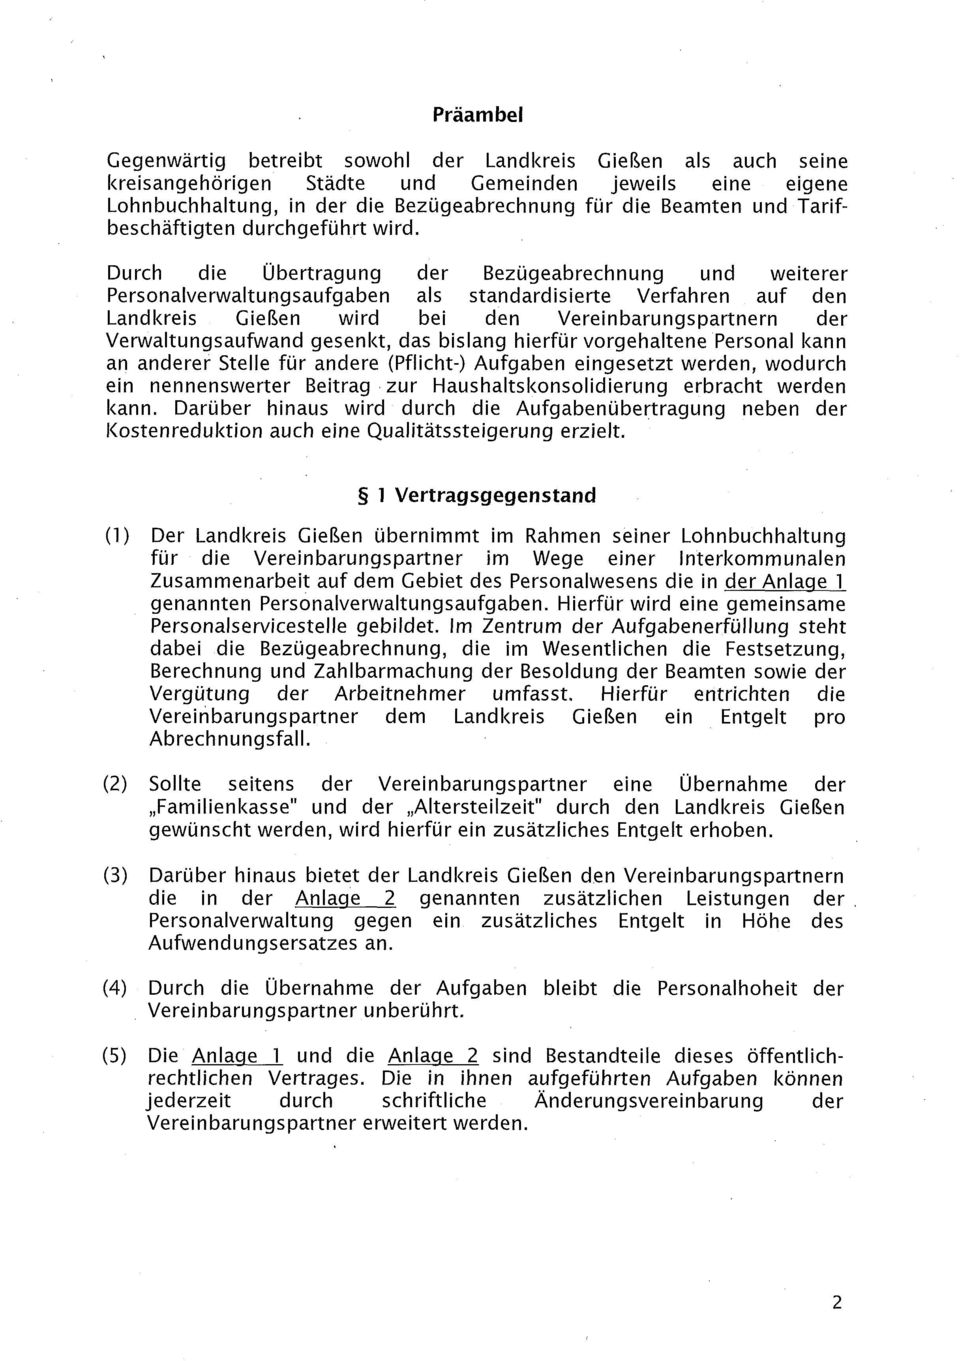 Durch die Übertragung der Bezügeabrechnung und weiterer Personalverwaltungsaufgaben als standardisierte Verfahren auf den Landkreis Gießen wird bei den Vereinbarungspartnern der Verwaltungsaufwand